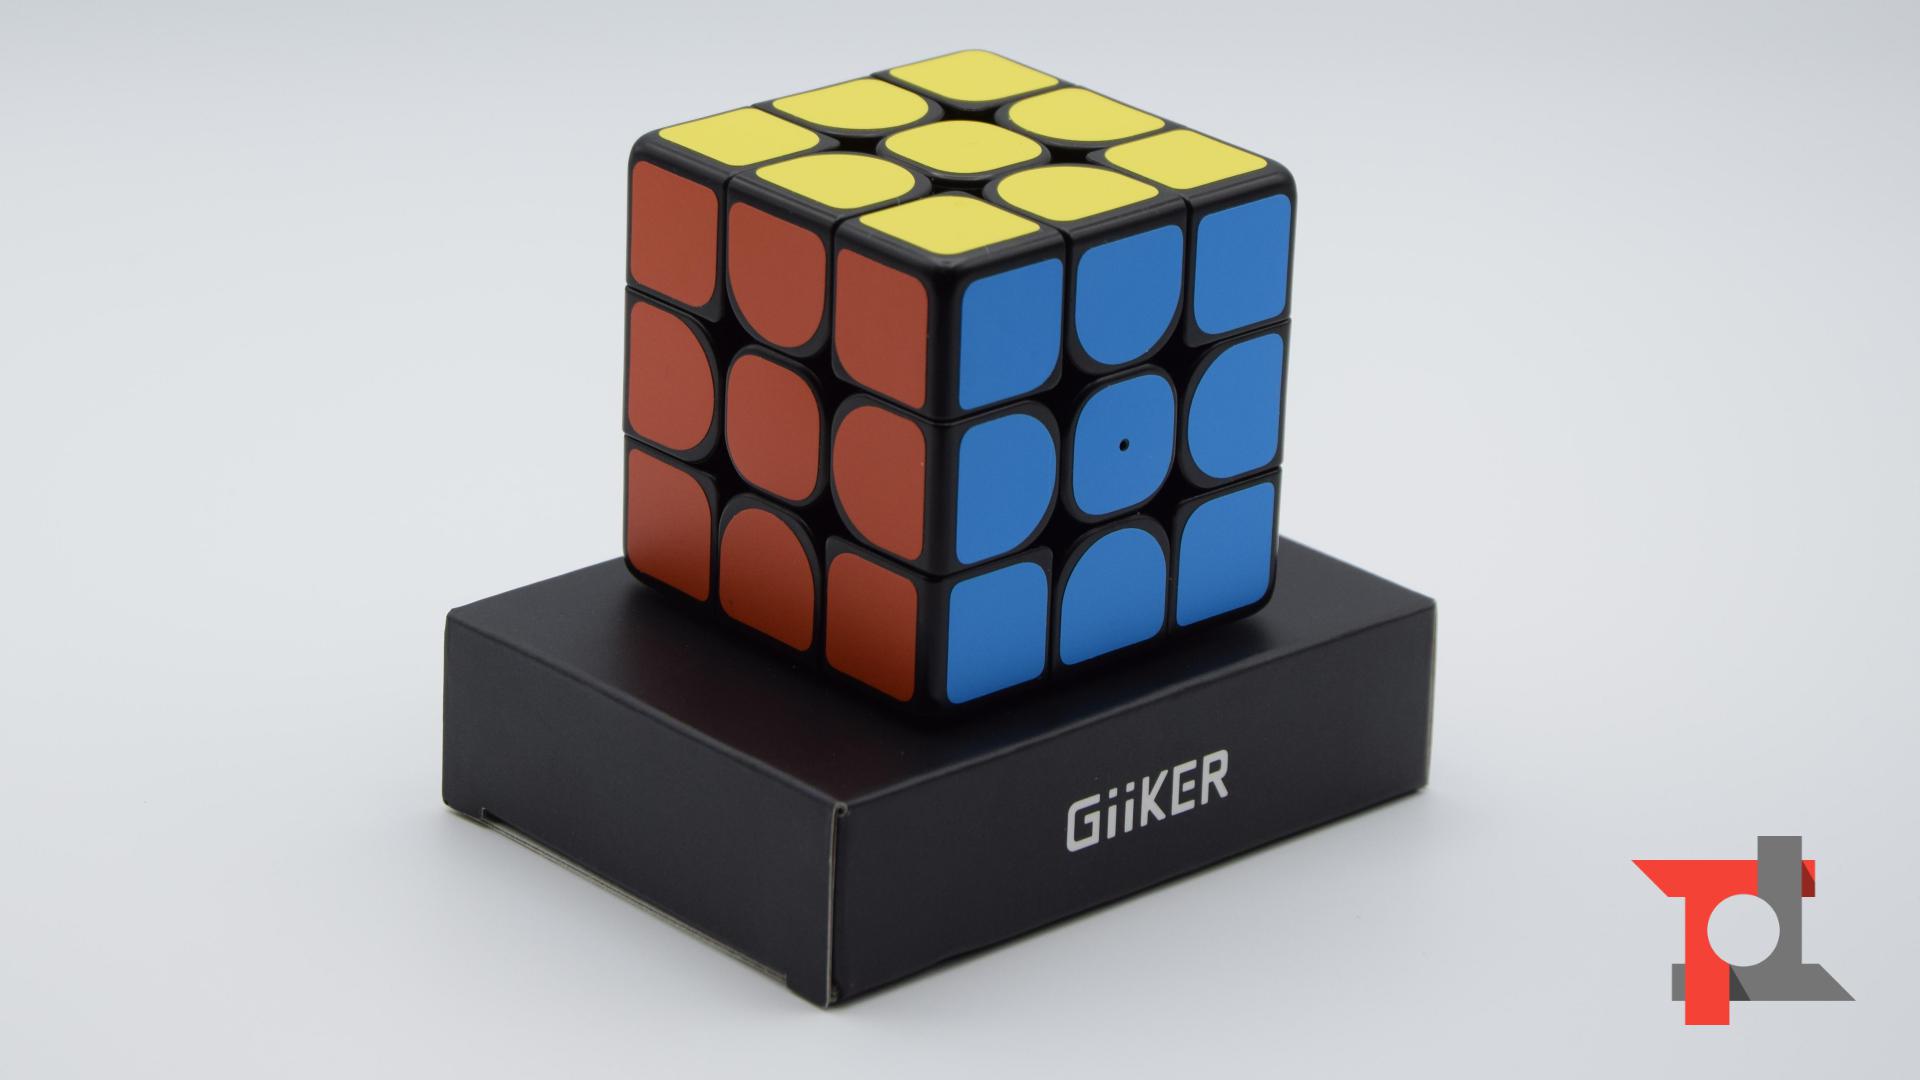 Recensione GiiKER Supercube i3, quando il cubo di Rubik entra nel terzo millennio 1